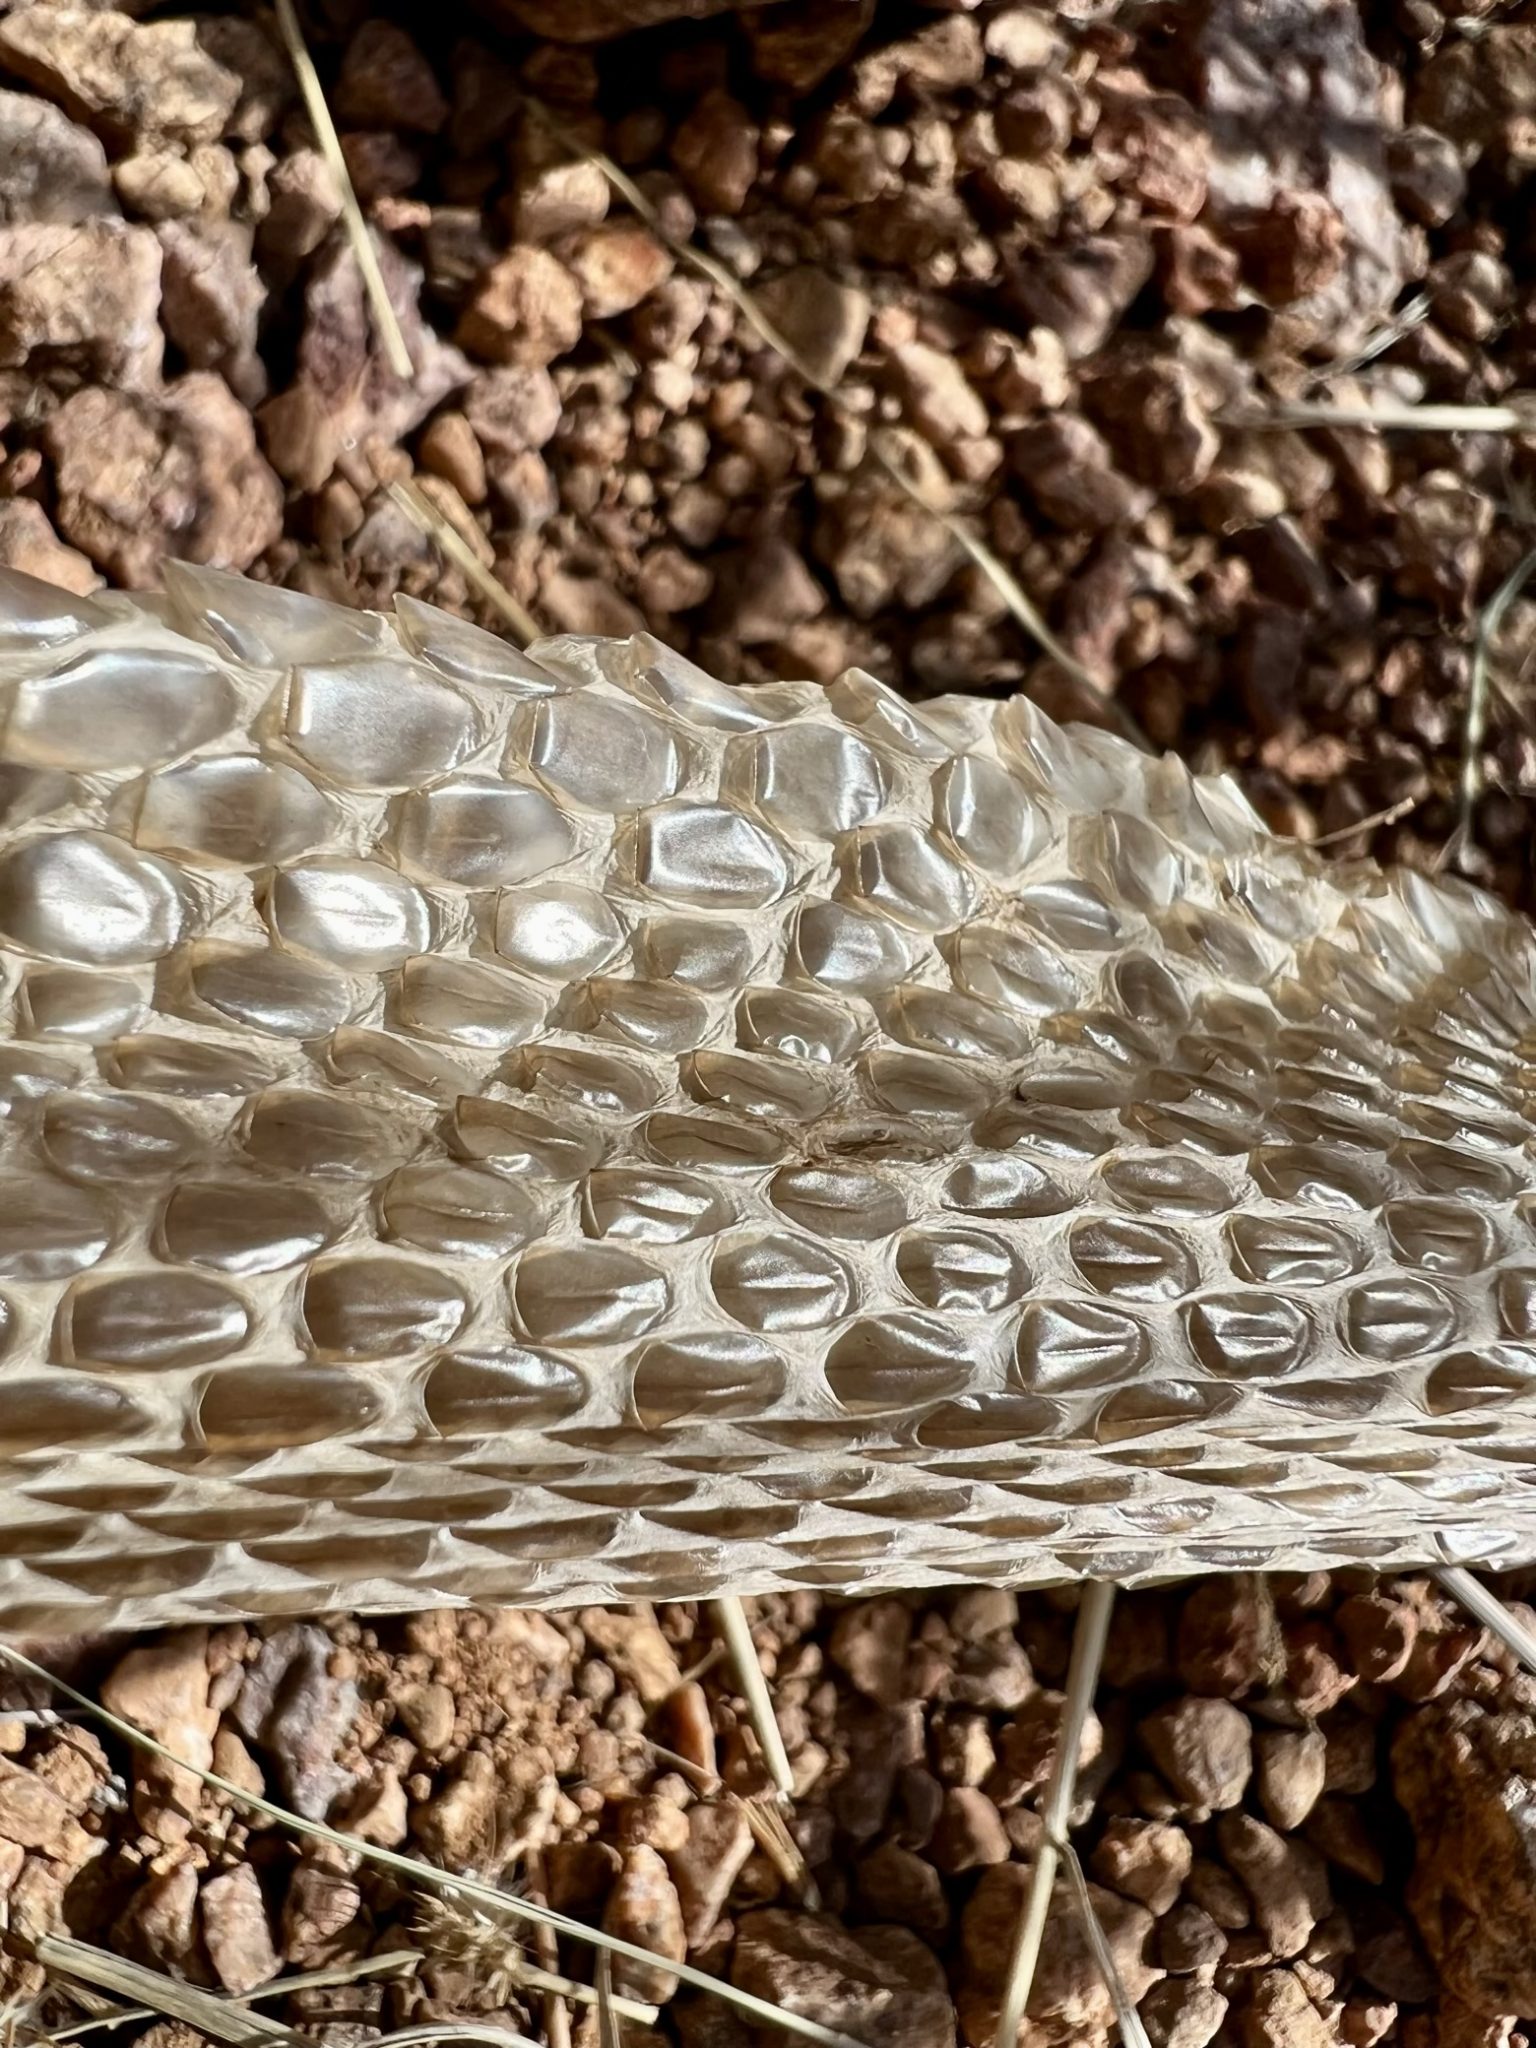 Rattlesnake skin